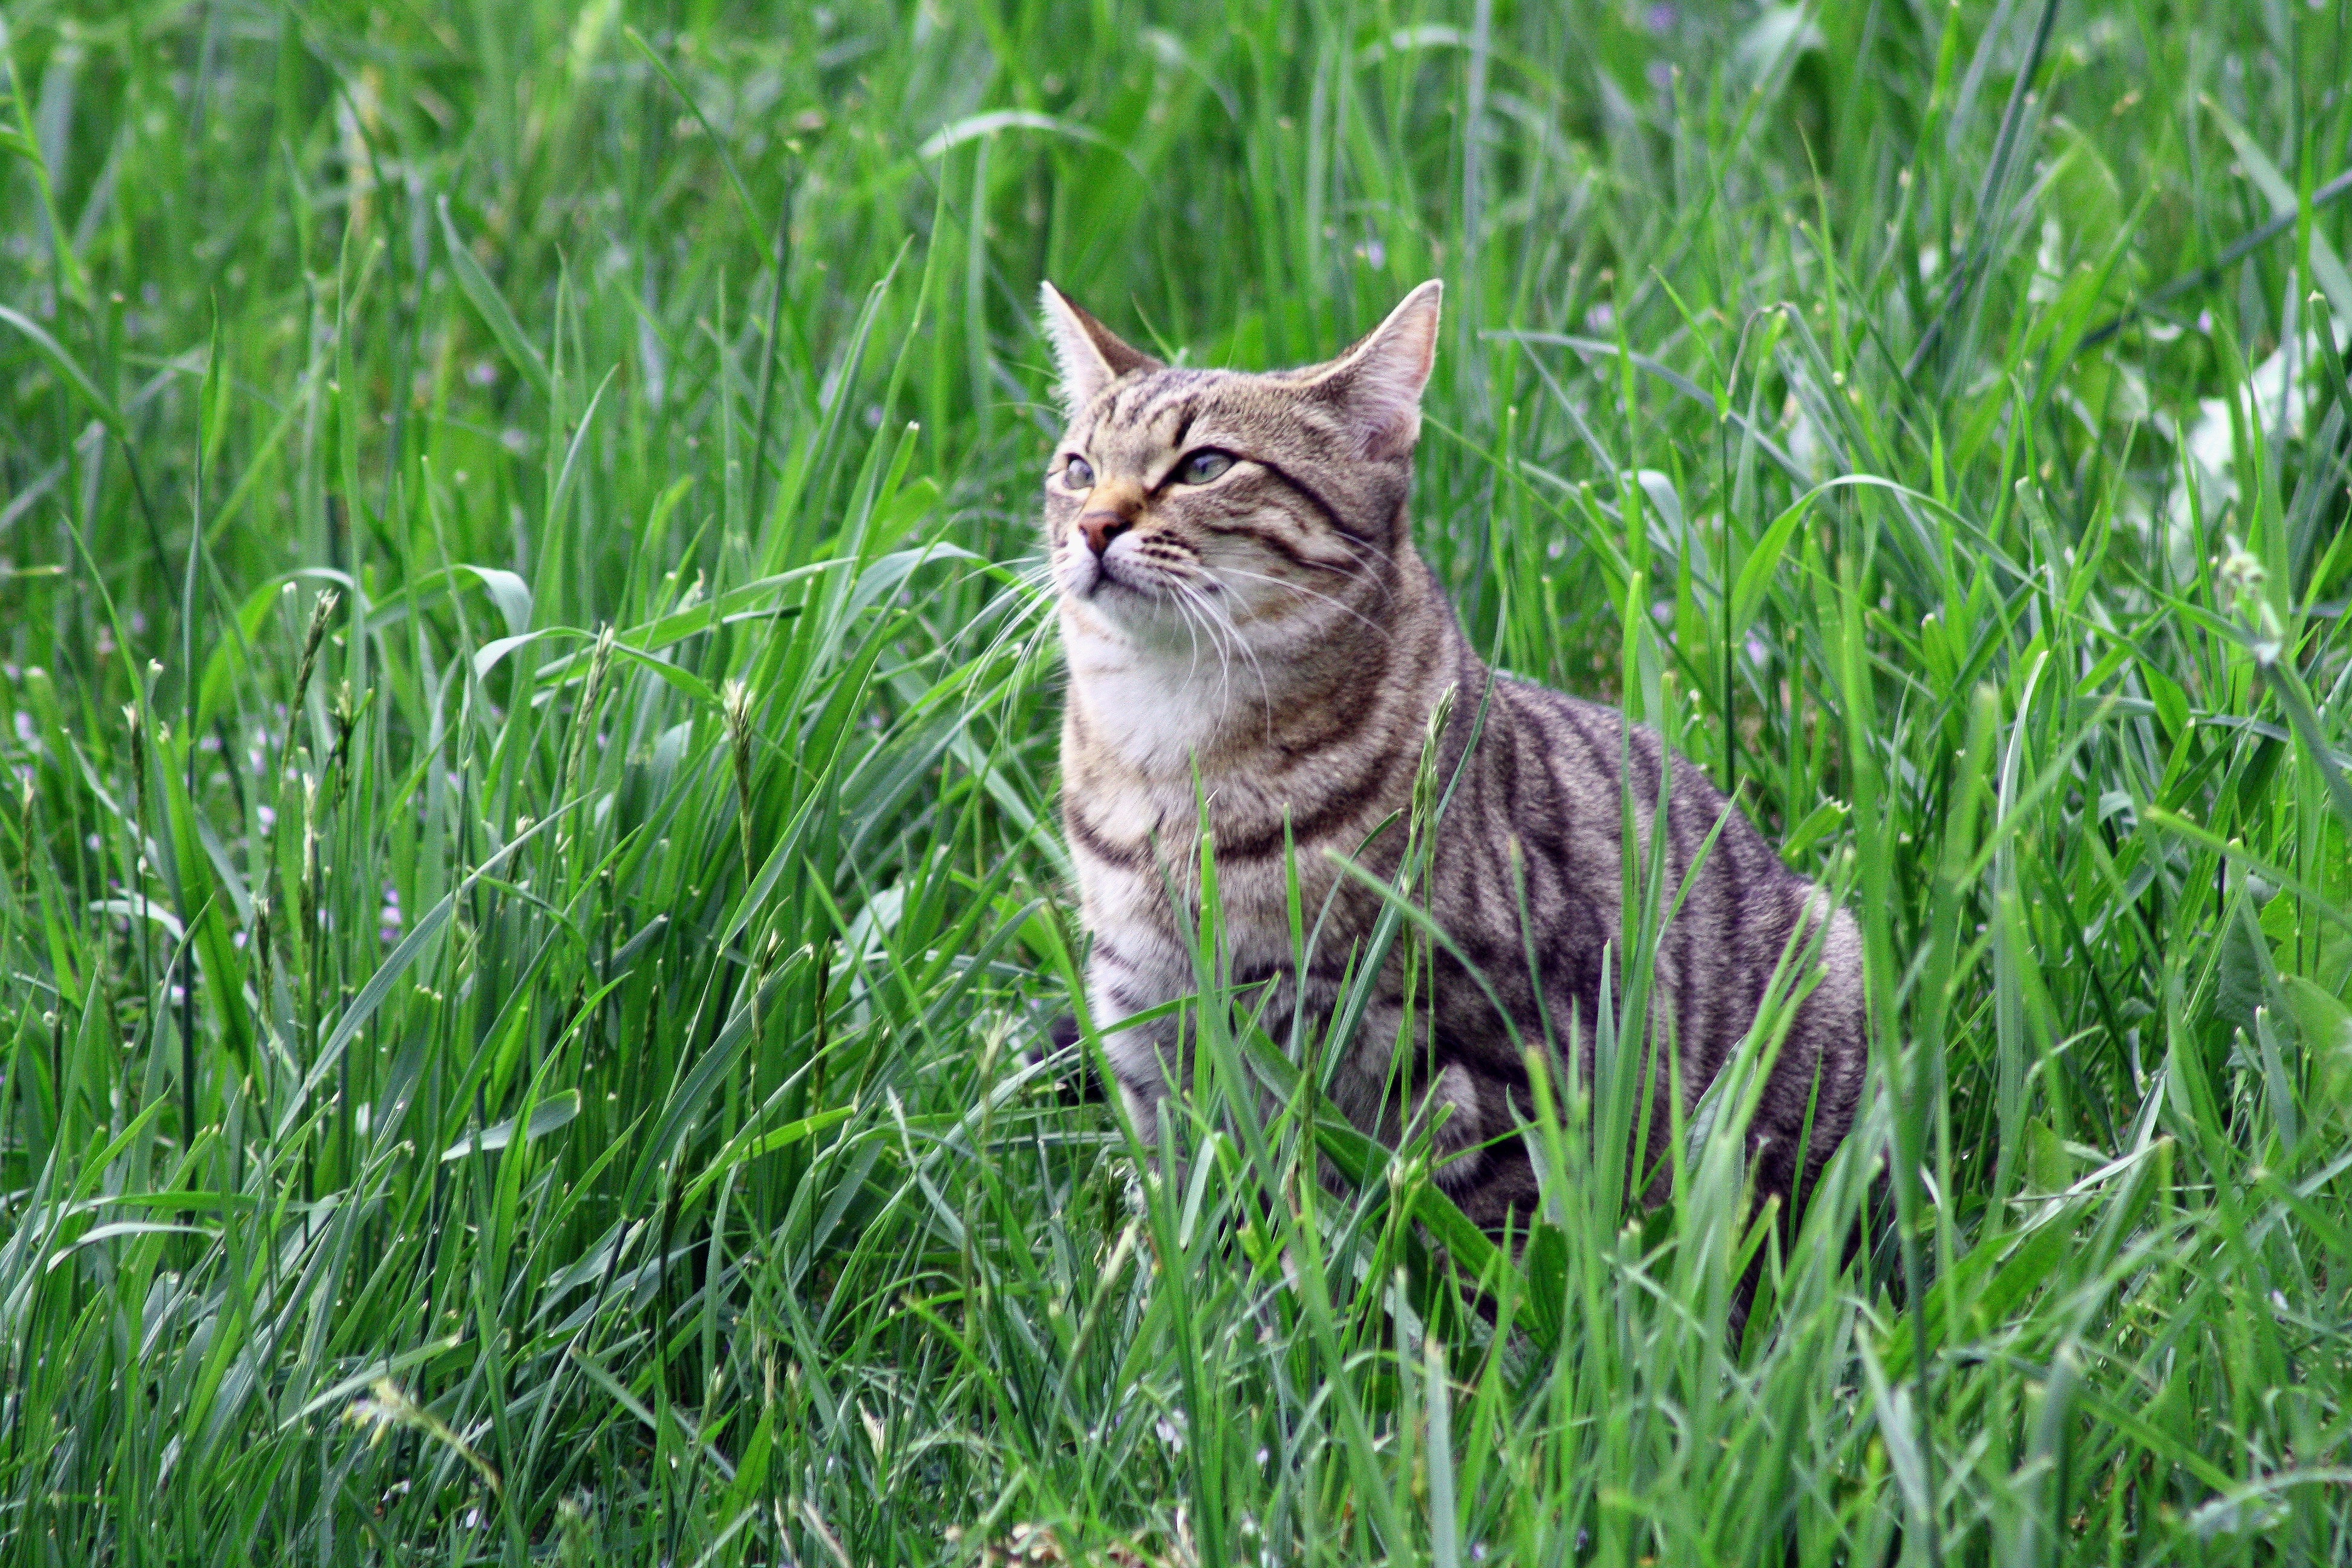 Tiger, Cat, Tigerli, domestic cat, grass